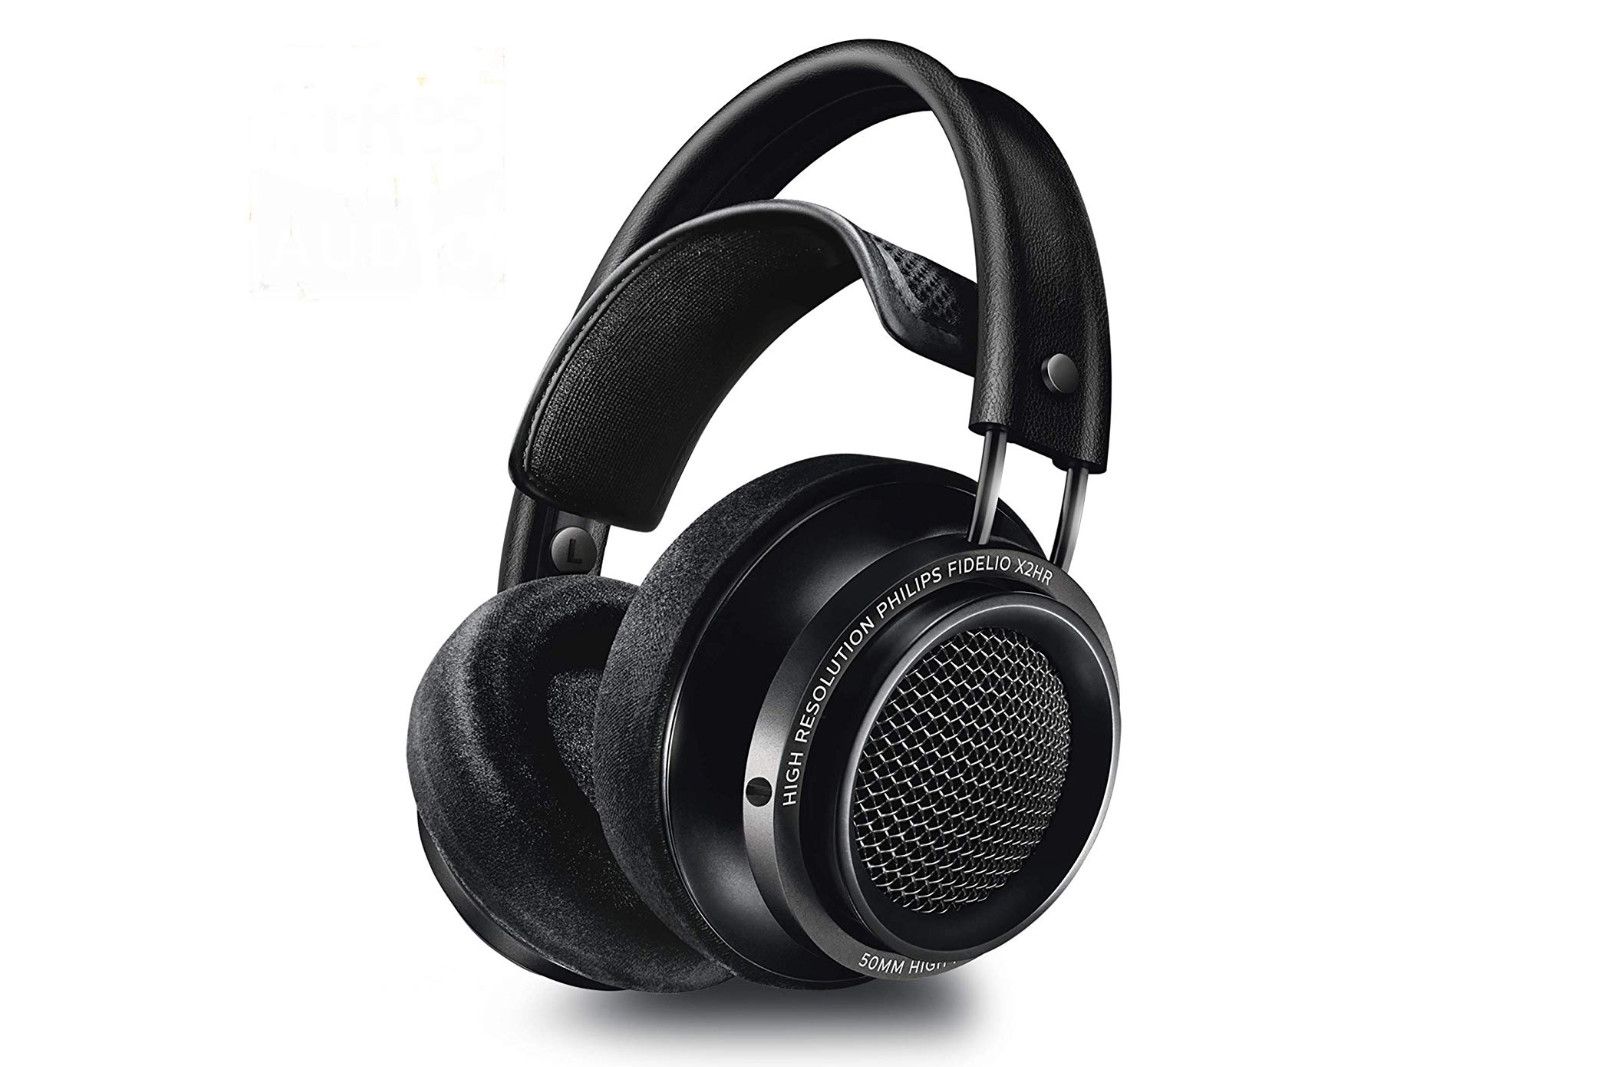 Snag the luxury Philips Fidelio X2HR headphones for half price on Prime Day image 1